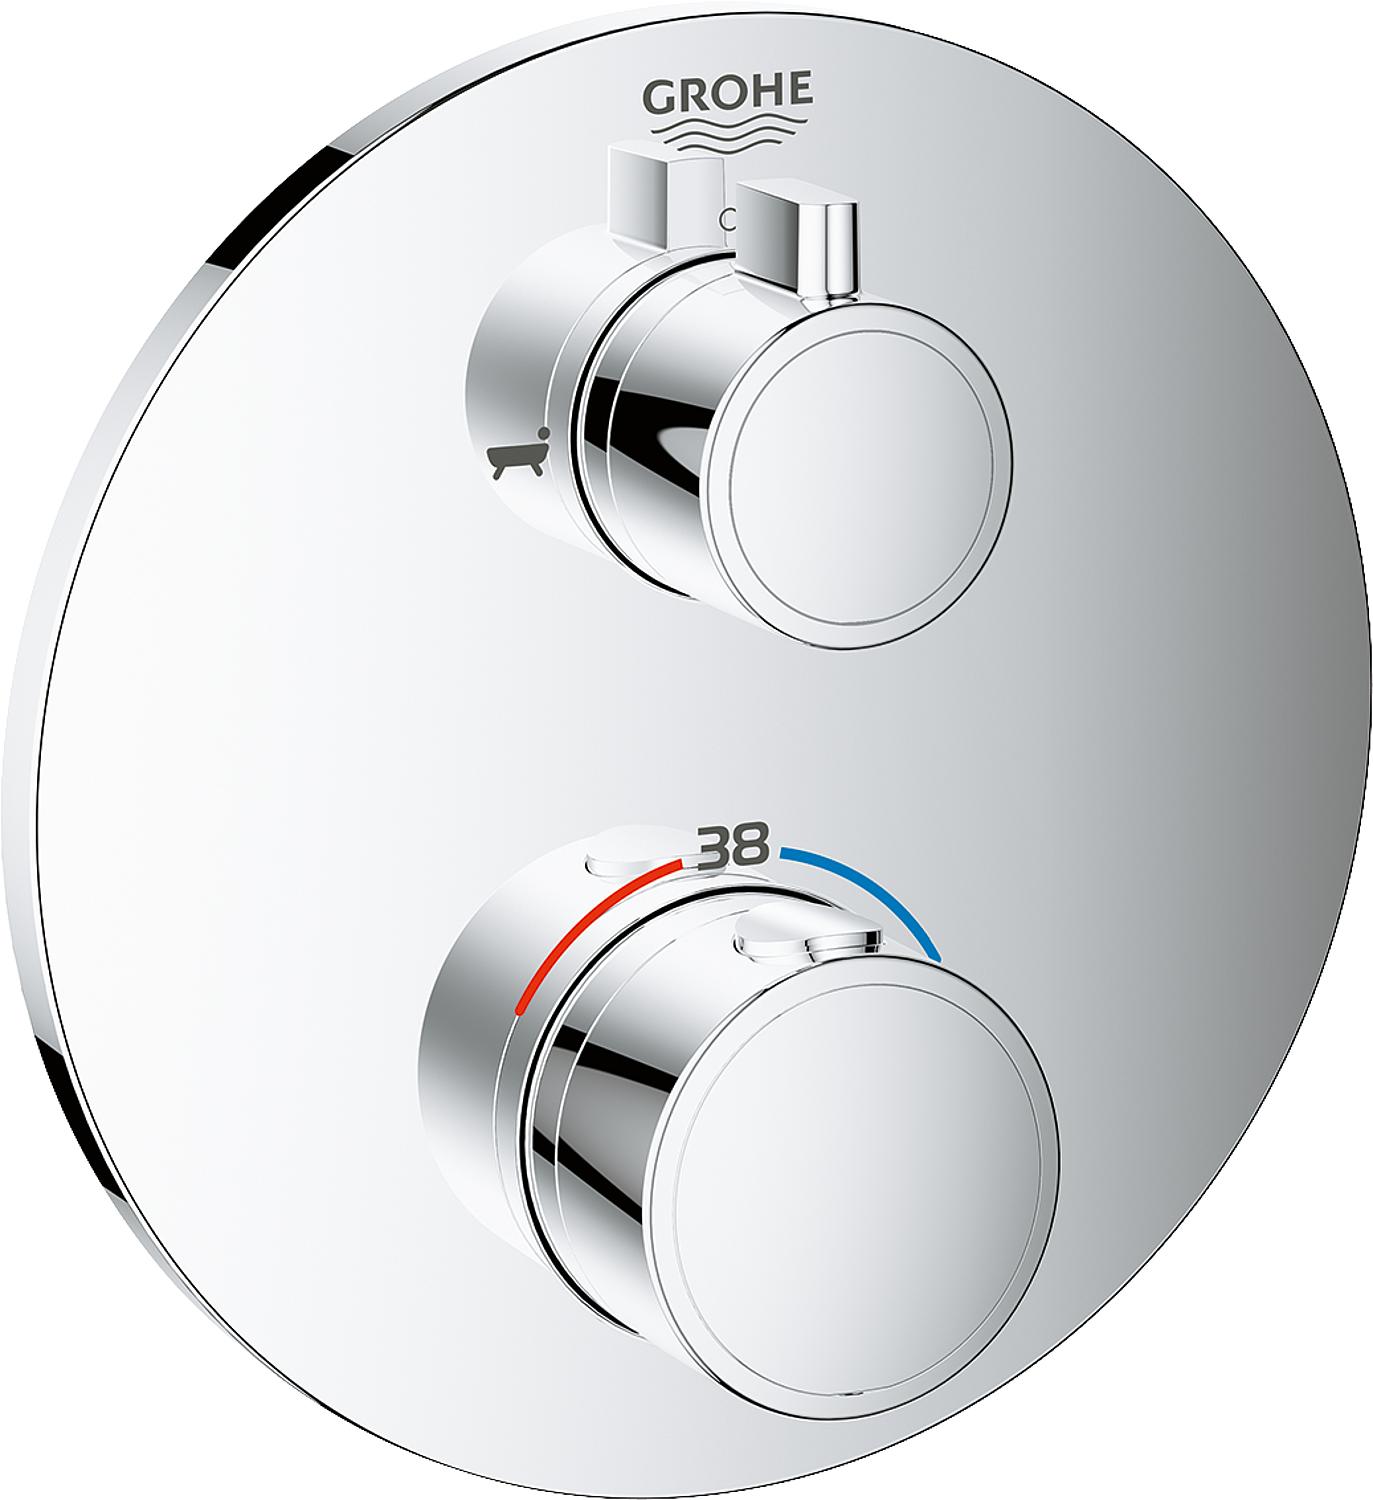 asdec life ® Thermostat Grohe Grohtherm Wanne (rund) für 35600, 2-Wege-Umstellung, chrom